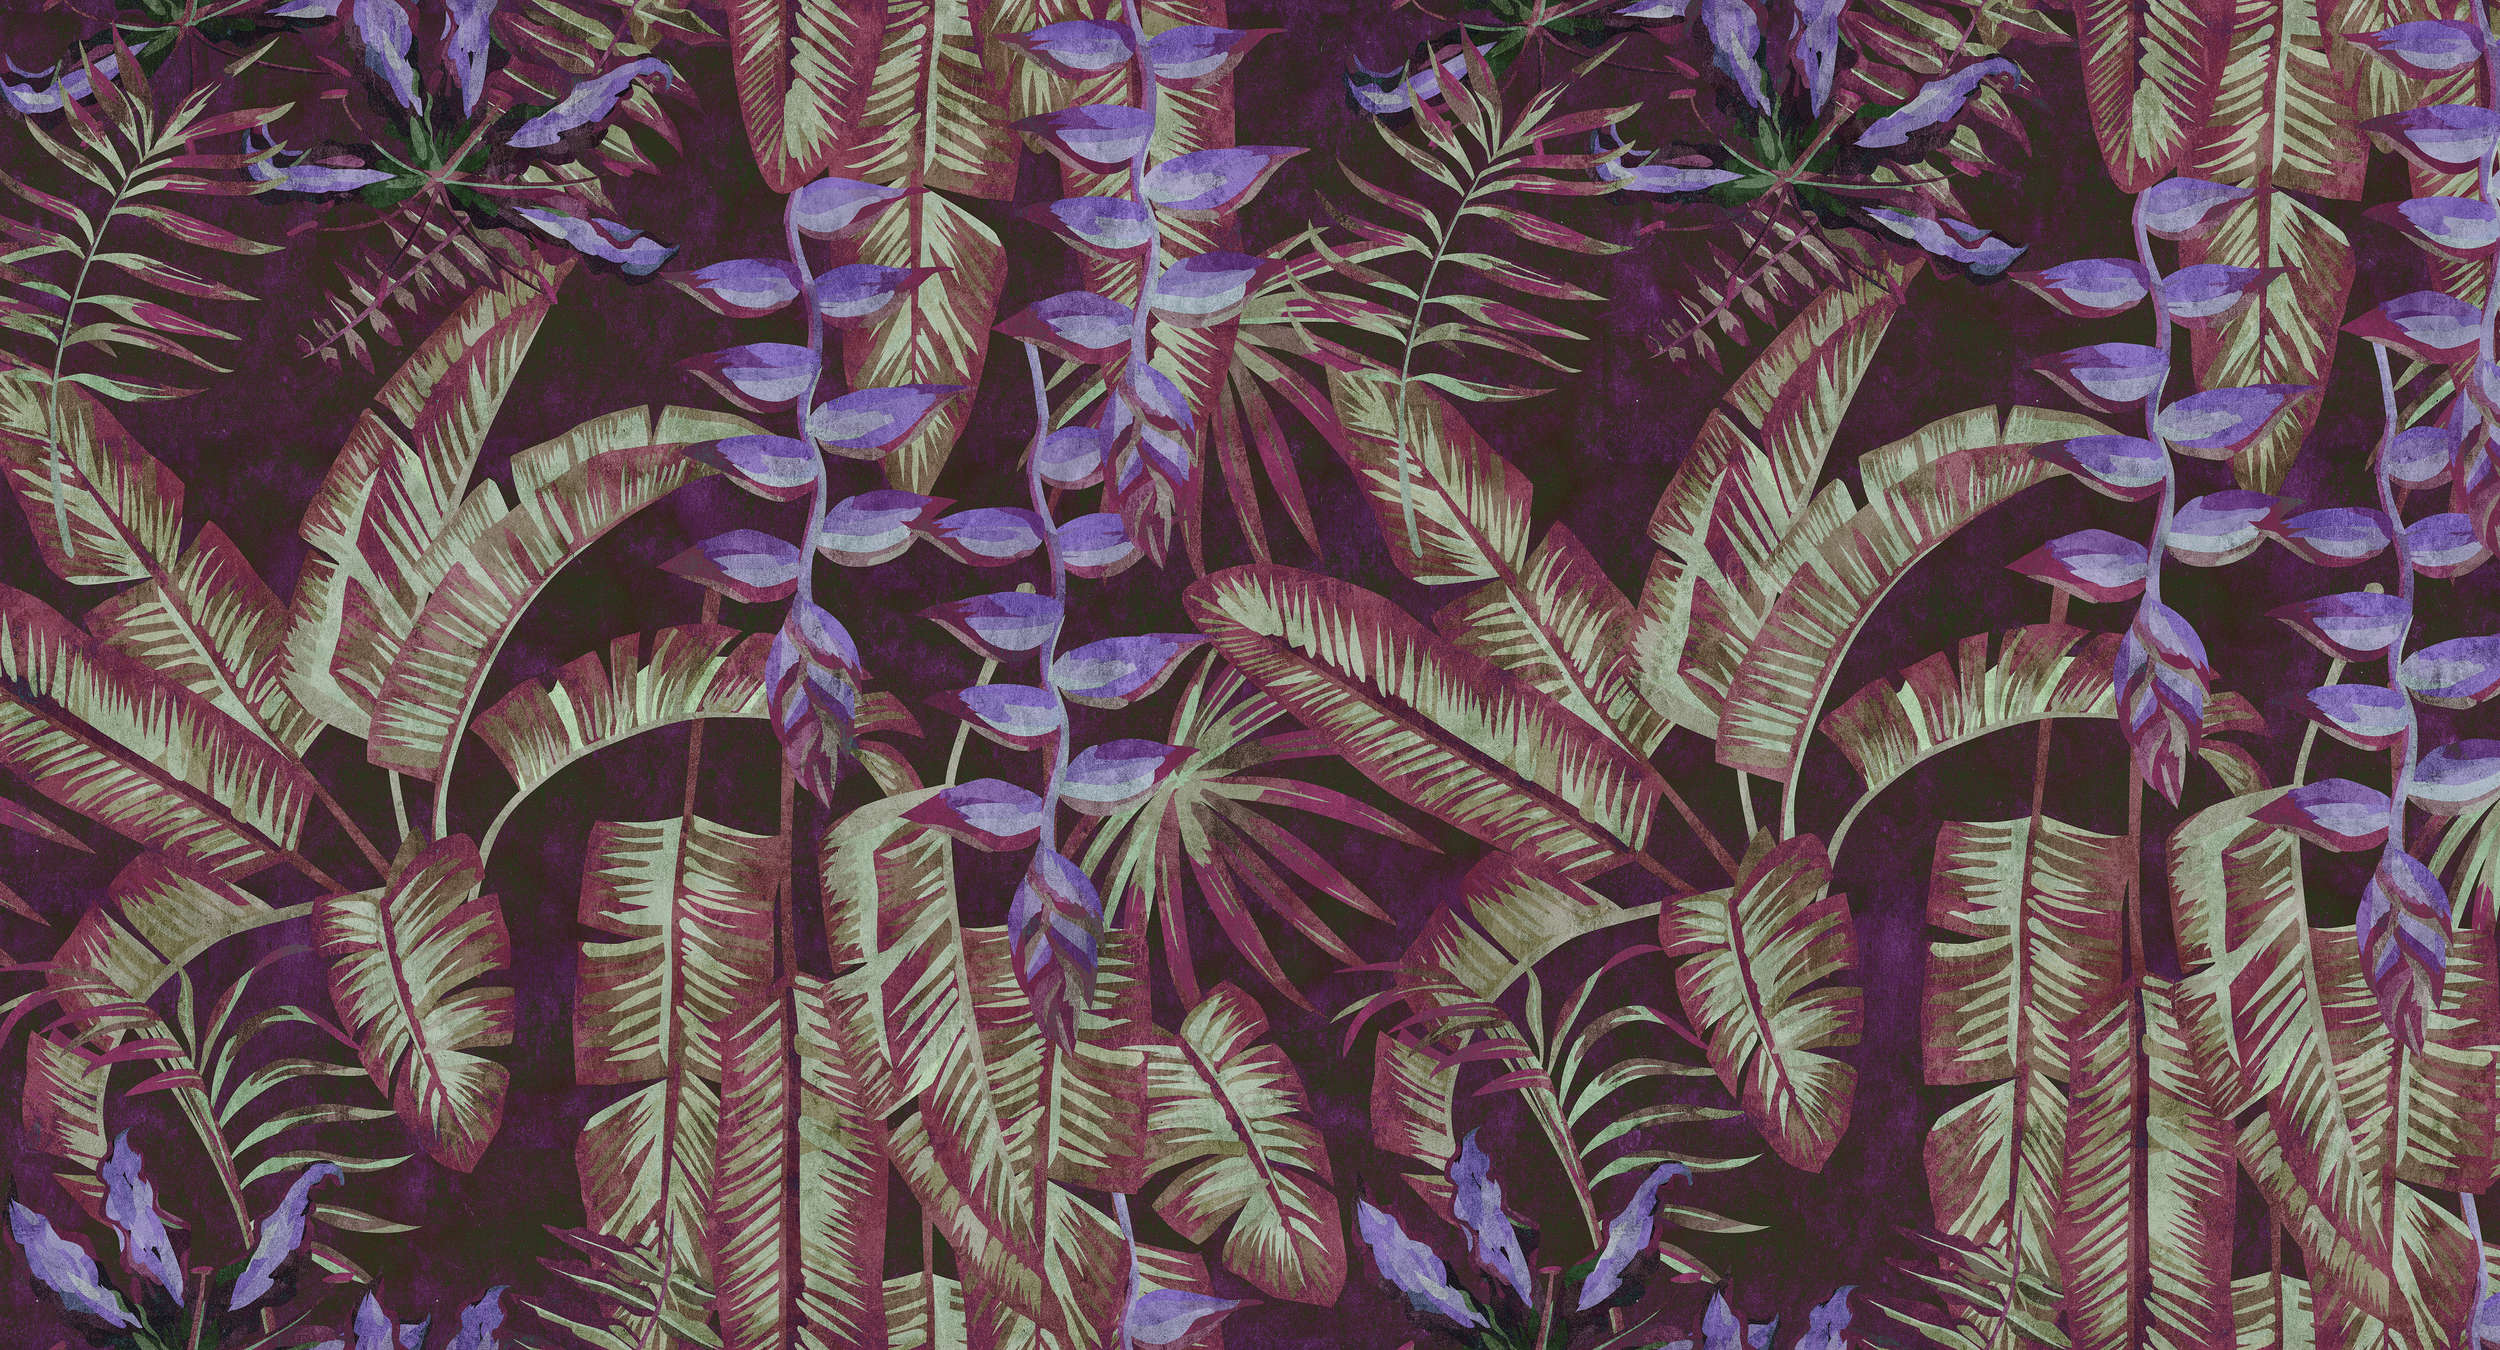             Tropicana 3 - Papel pintado tropical en estructura de papel secante con hojas y helechos - Rojo, Violeta | Estructura no tejida
        